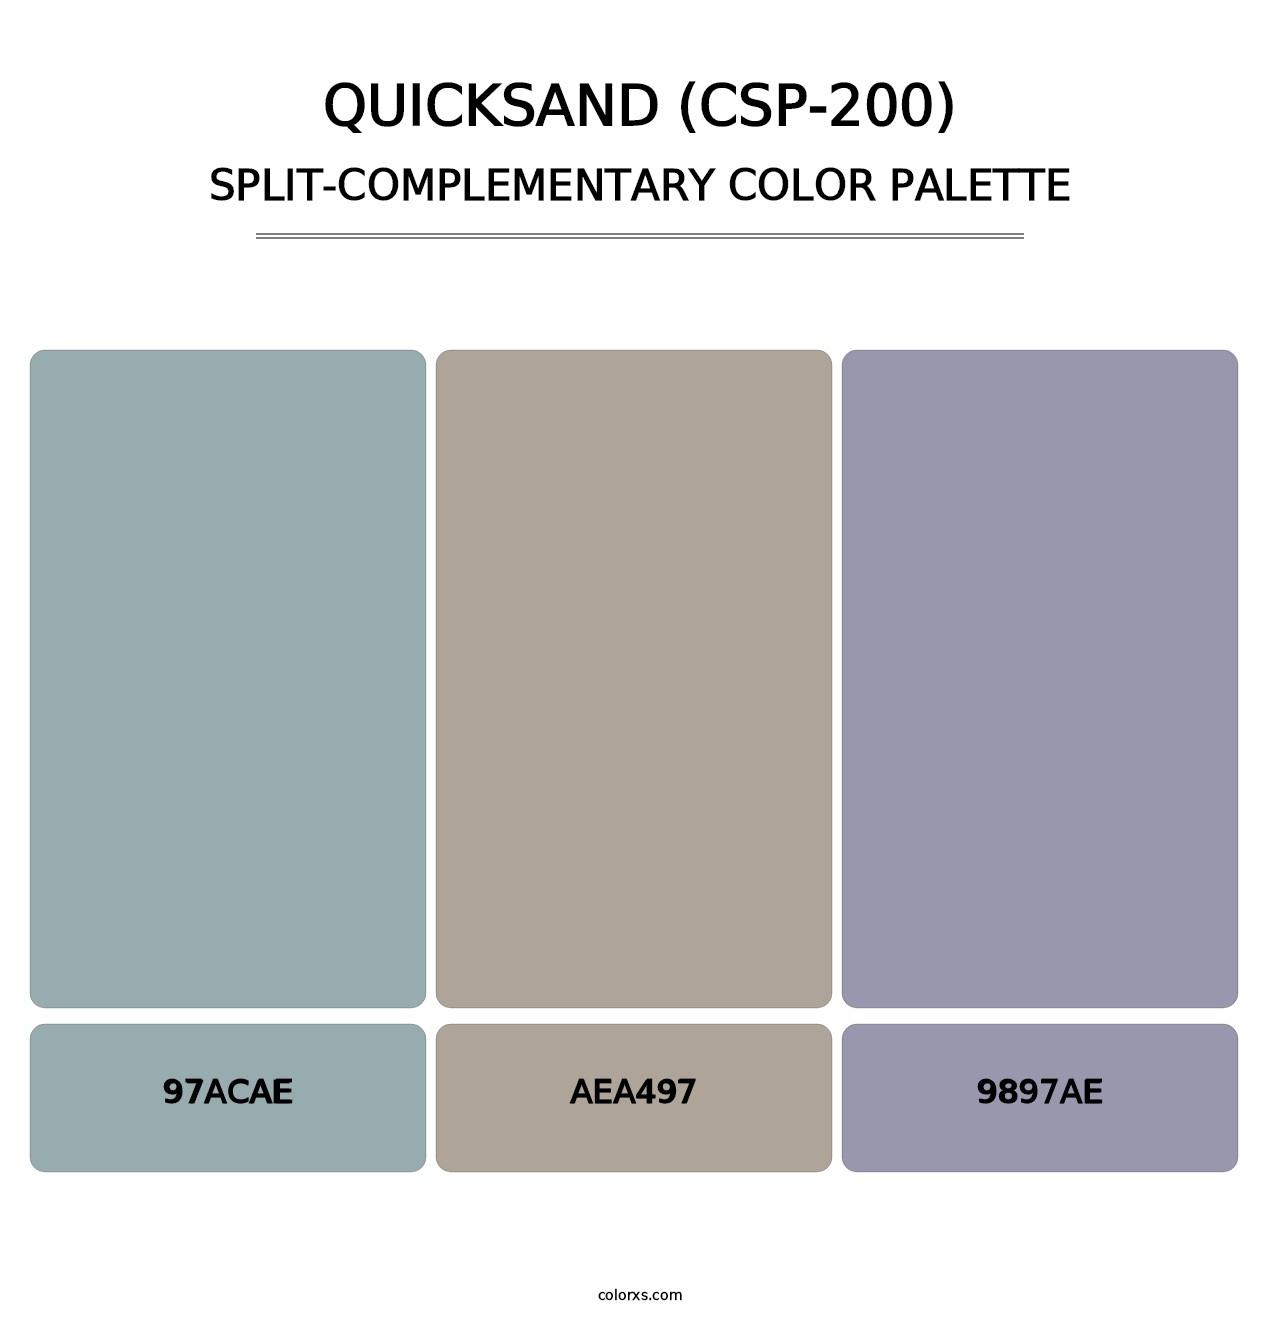 Quicksand (CSP-200) - Split-Complementary Color Palette